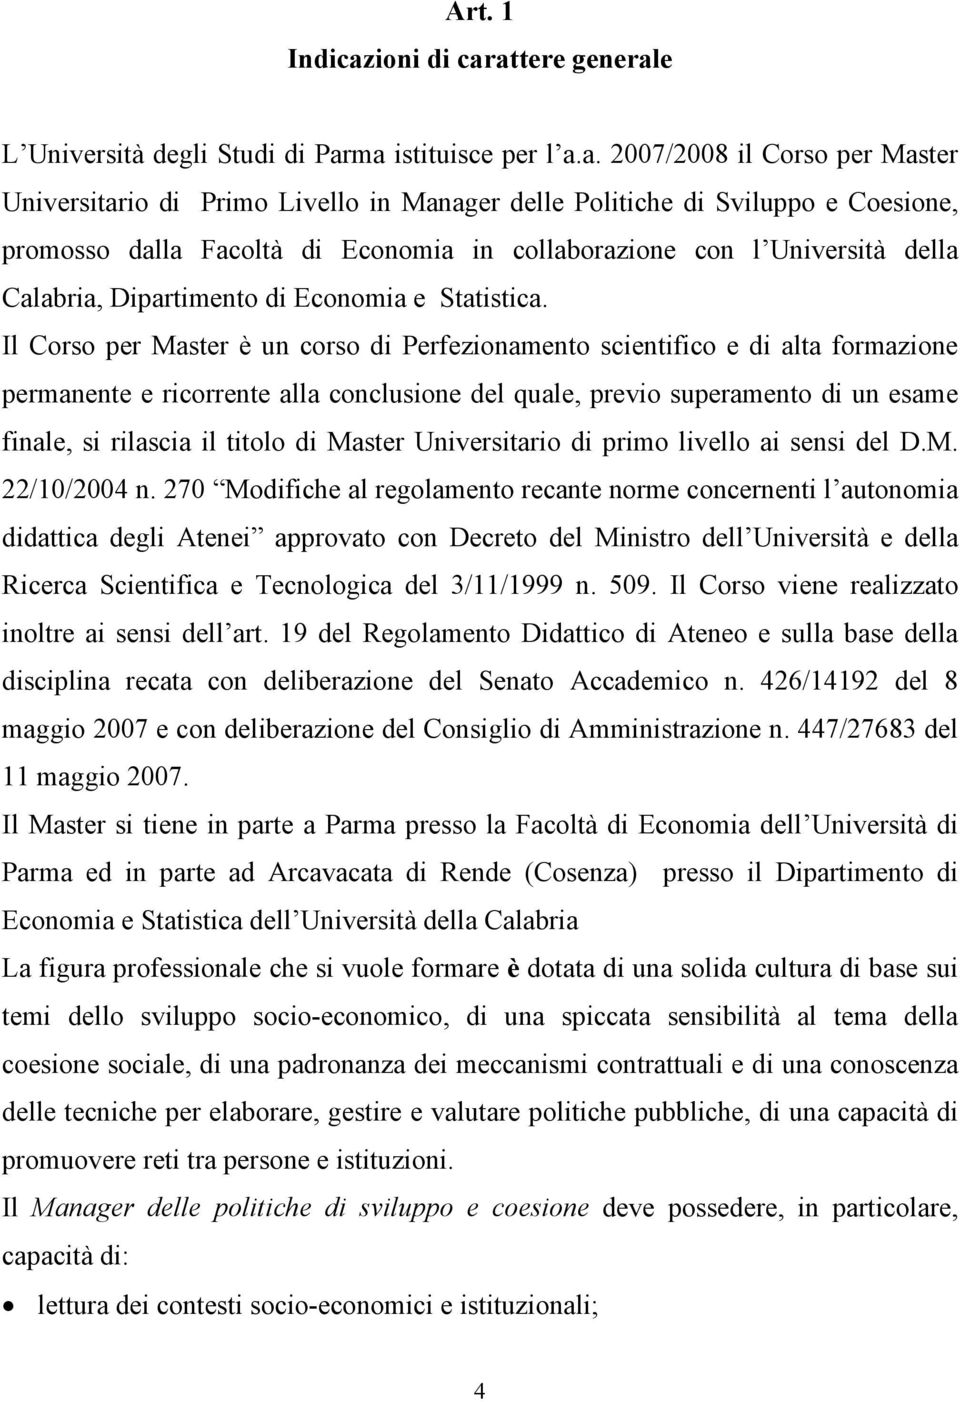 attere generale L Università degli Studi di Parma istituisce per l a.a. 2007/2008 il Corso per Master Universitario di Primo Livello in Manager delle Politiche di Sviluppo e Coesione, promosso dalla